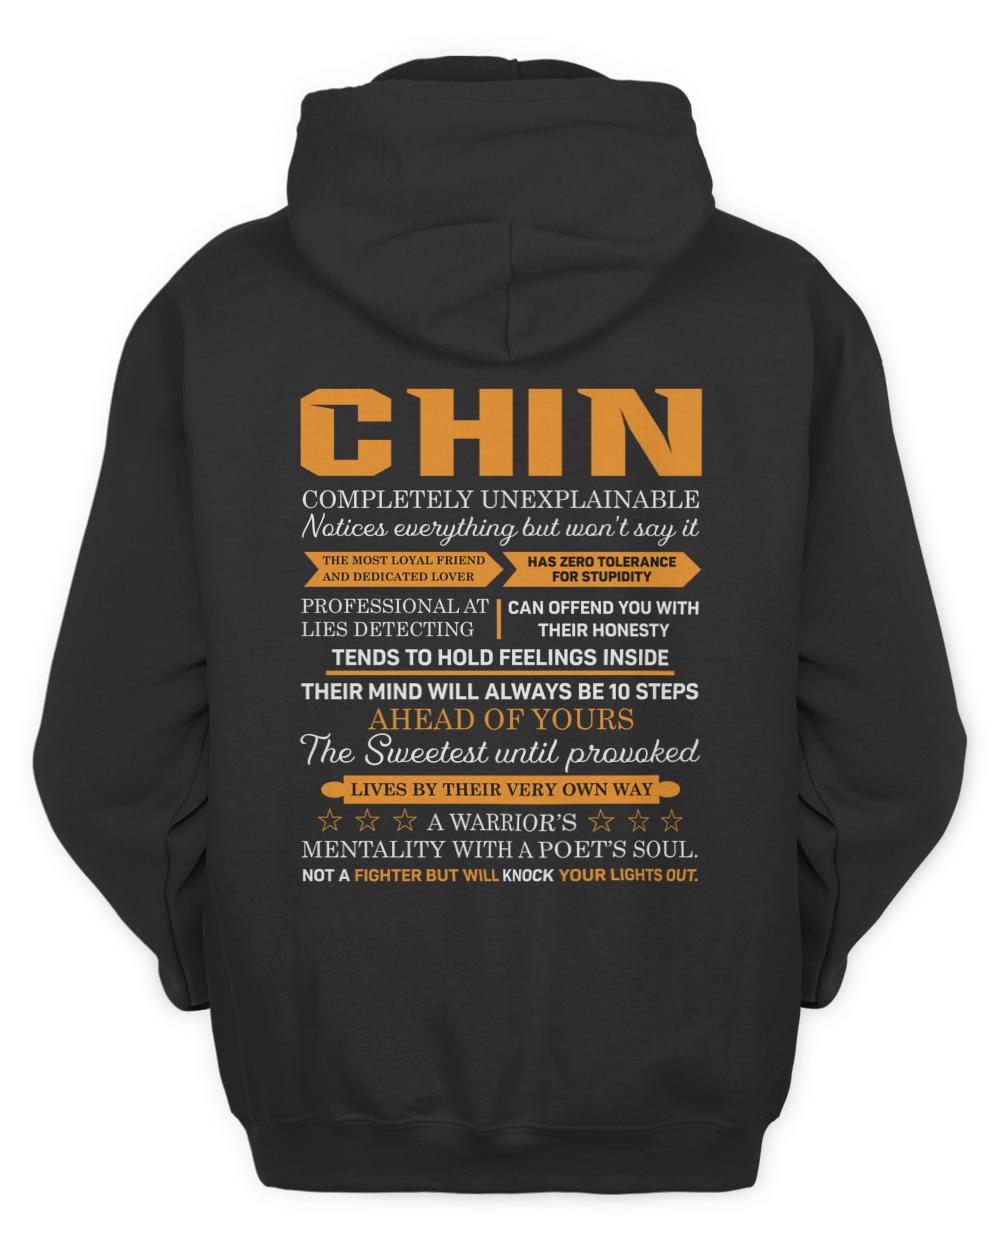 CHIN-H5-N1